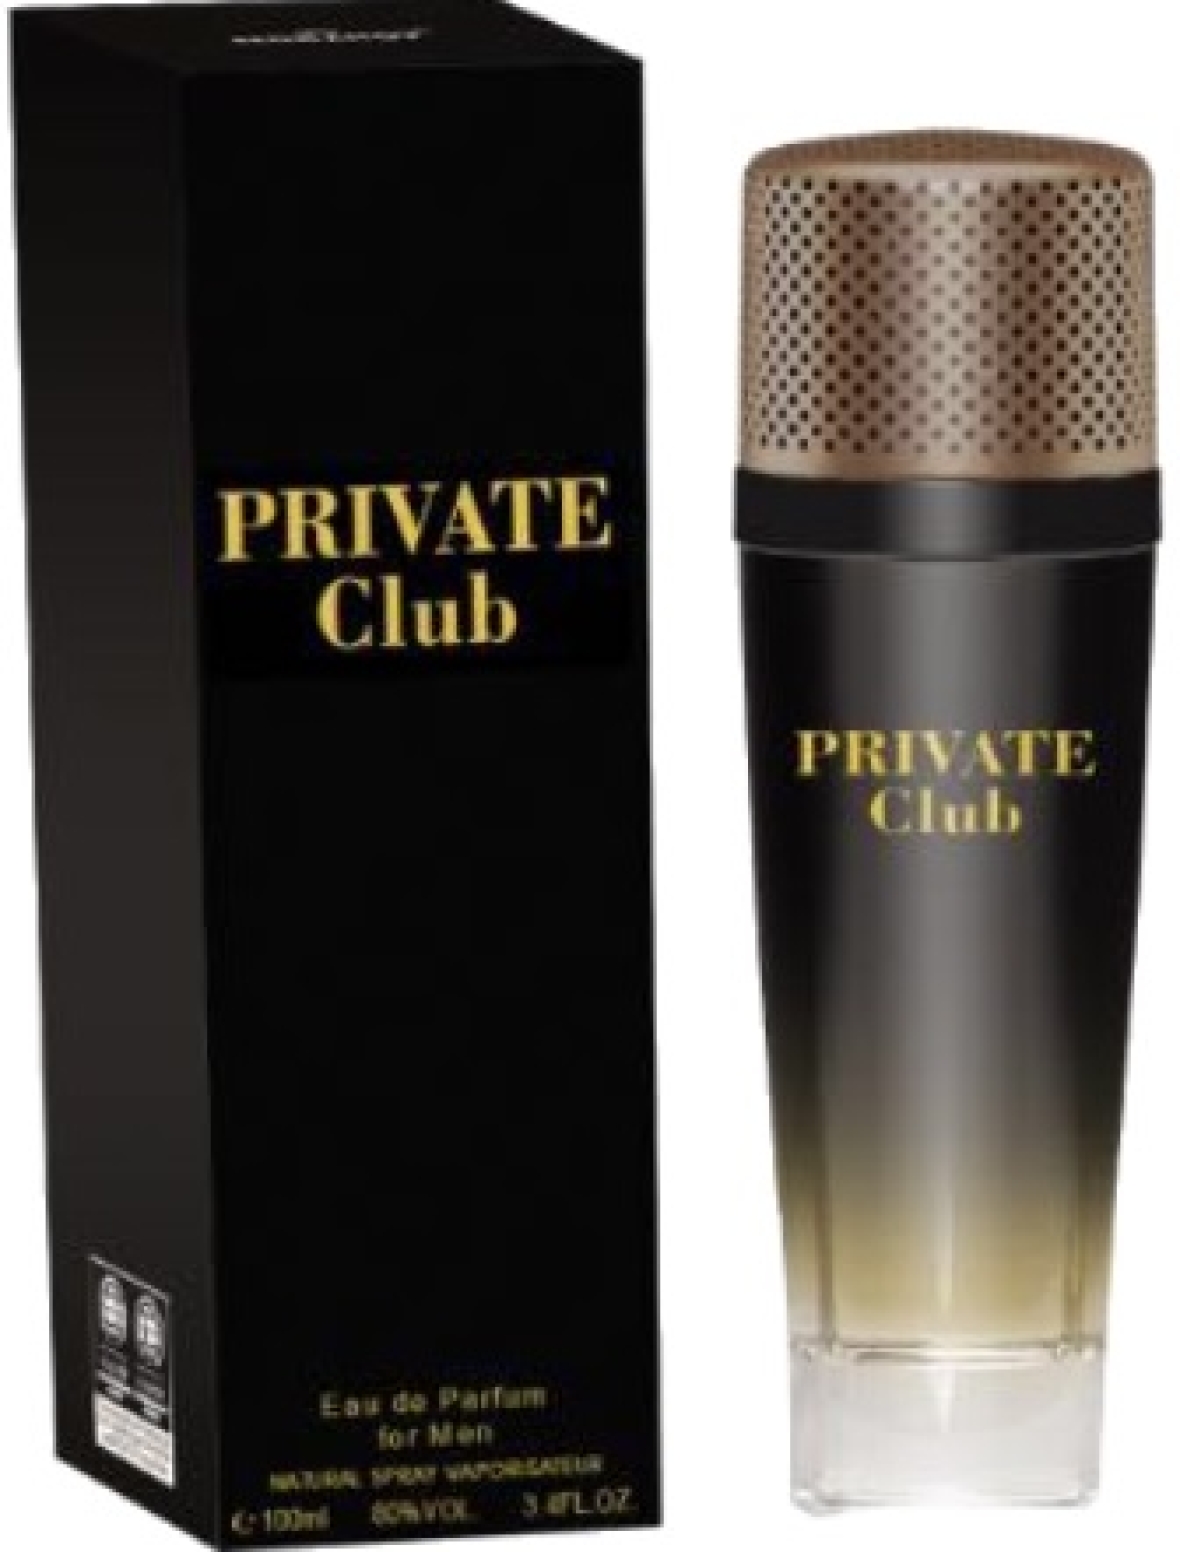 Notre gamme de parfums SH14. PRIVATE CLUB Financer voyage scolaire